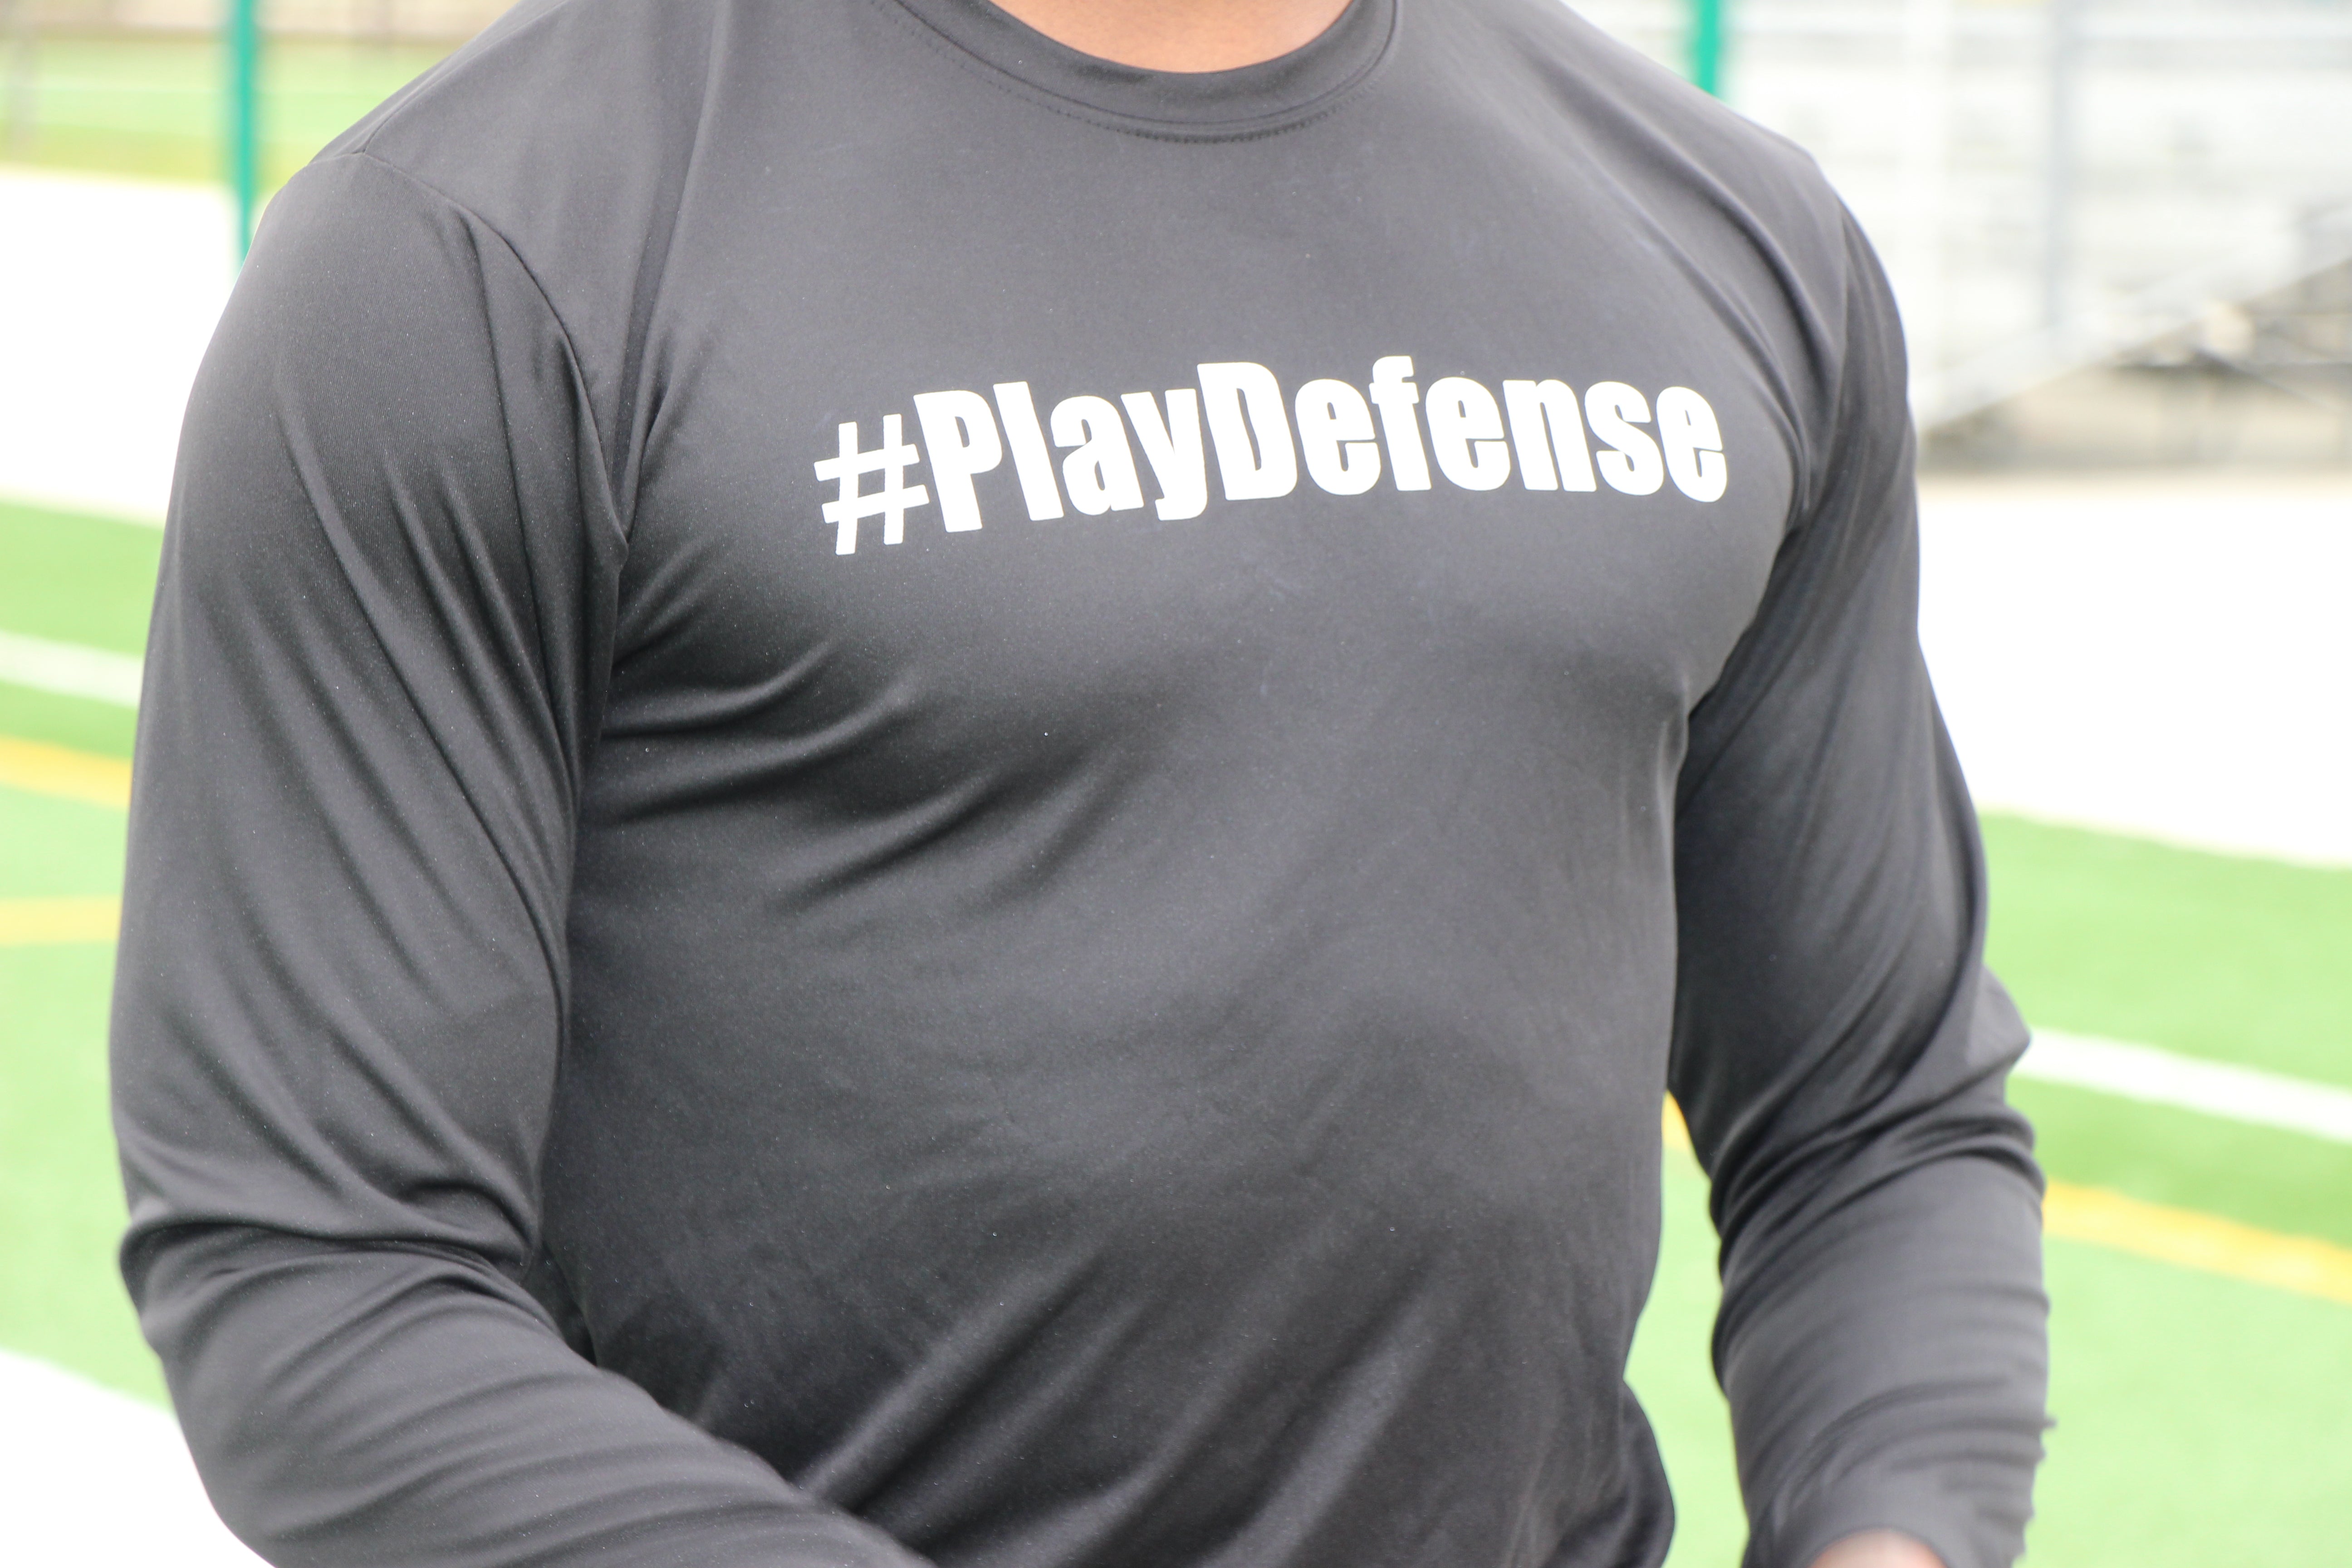 Play Defense long Sleeves Shirt